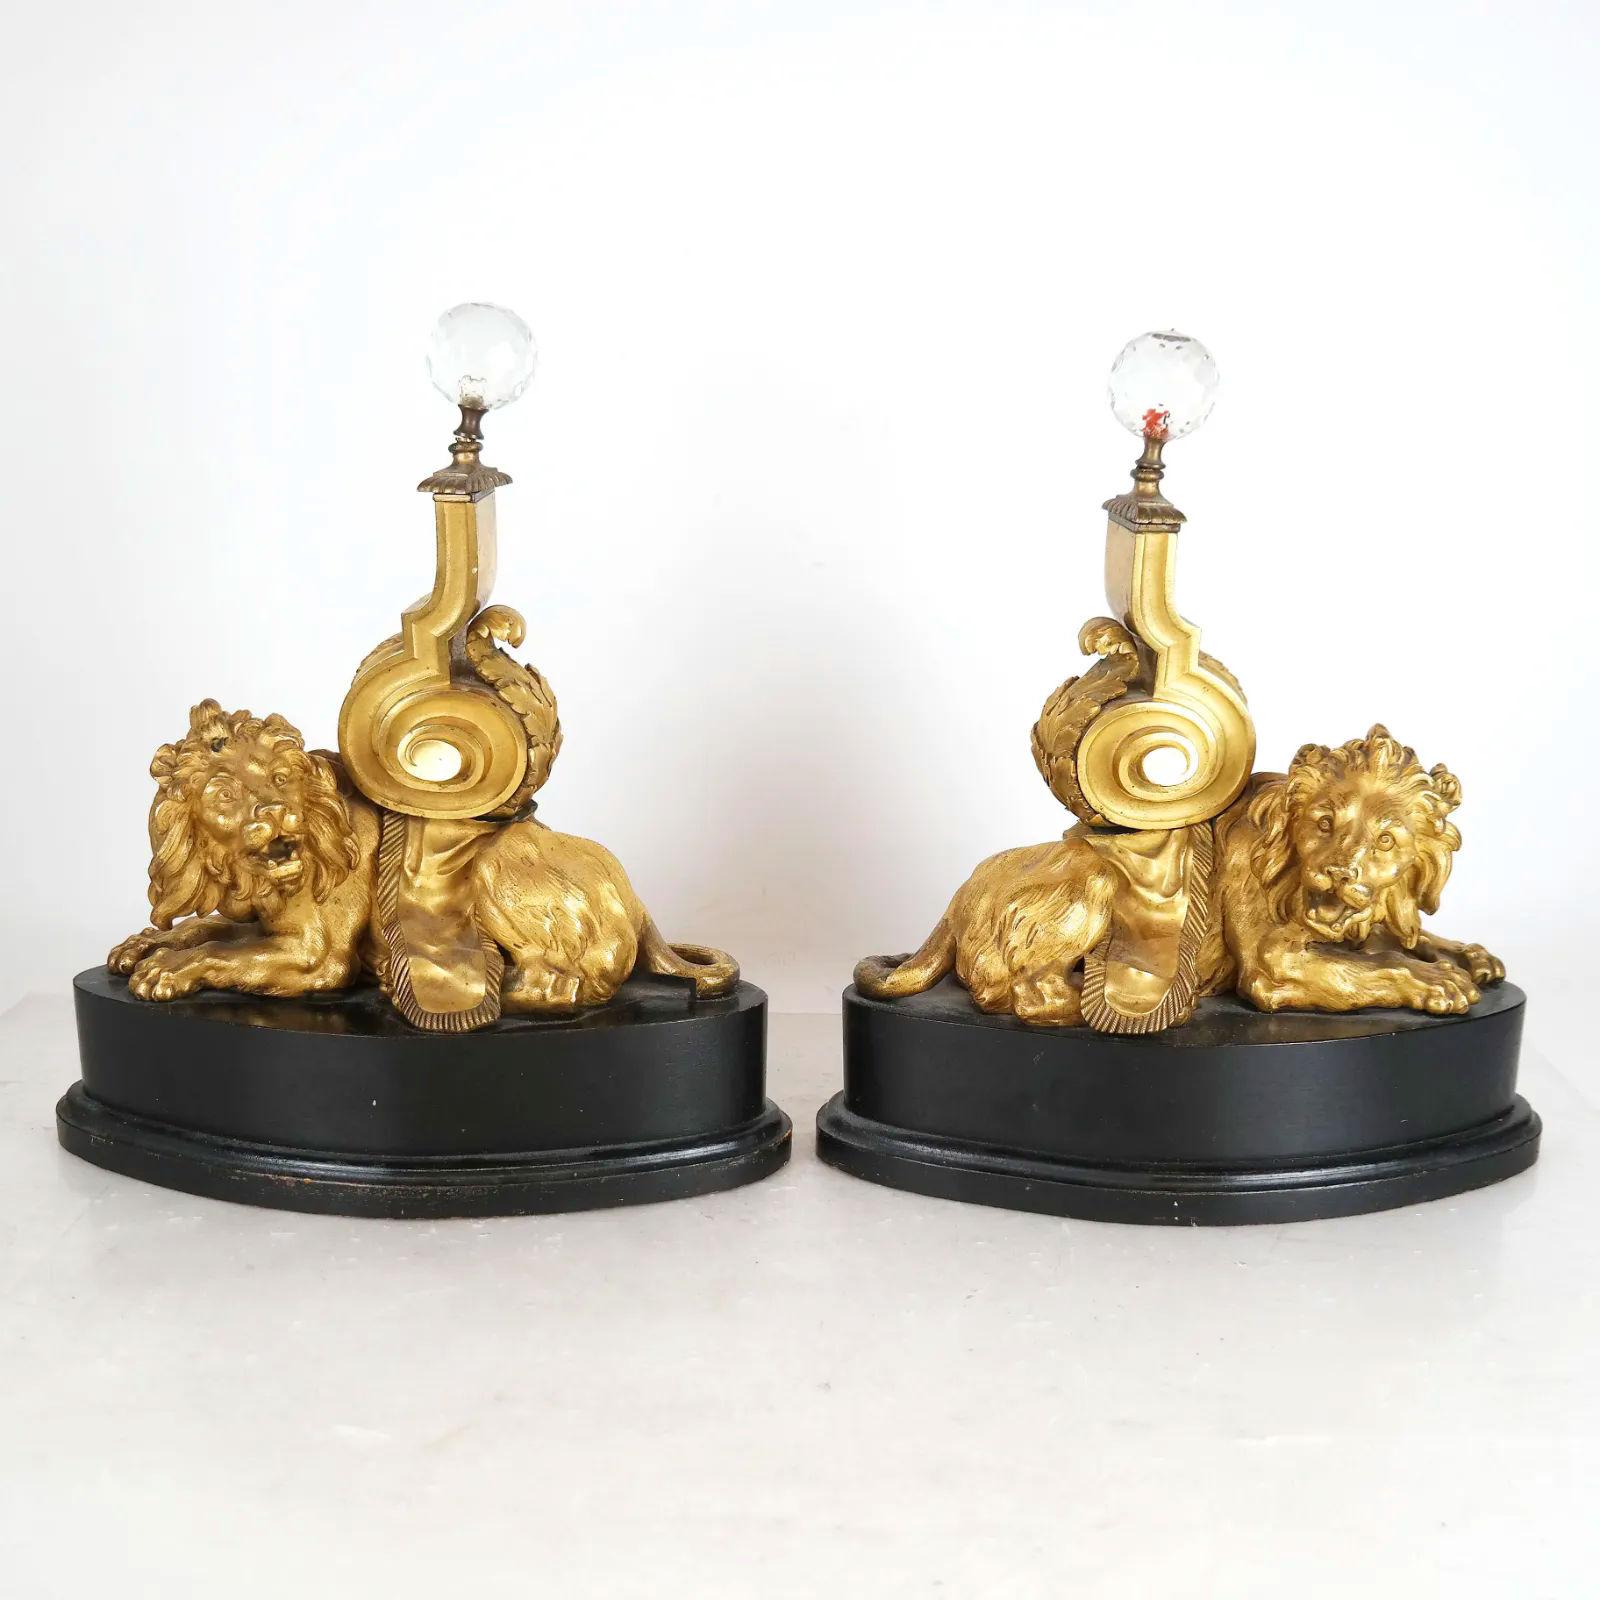 Notre paire de chenets en bronze doré du XIXe siècle a ensuite été montée sur des socles en bois ébénisé pour être utilisée dans les lampes de table, actuellement avec des fleurons en cristal de forme sphérique ultérieurement. Des douilles et un